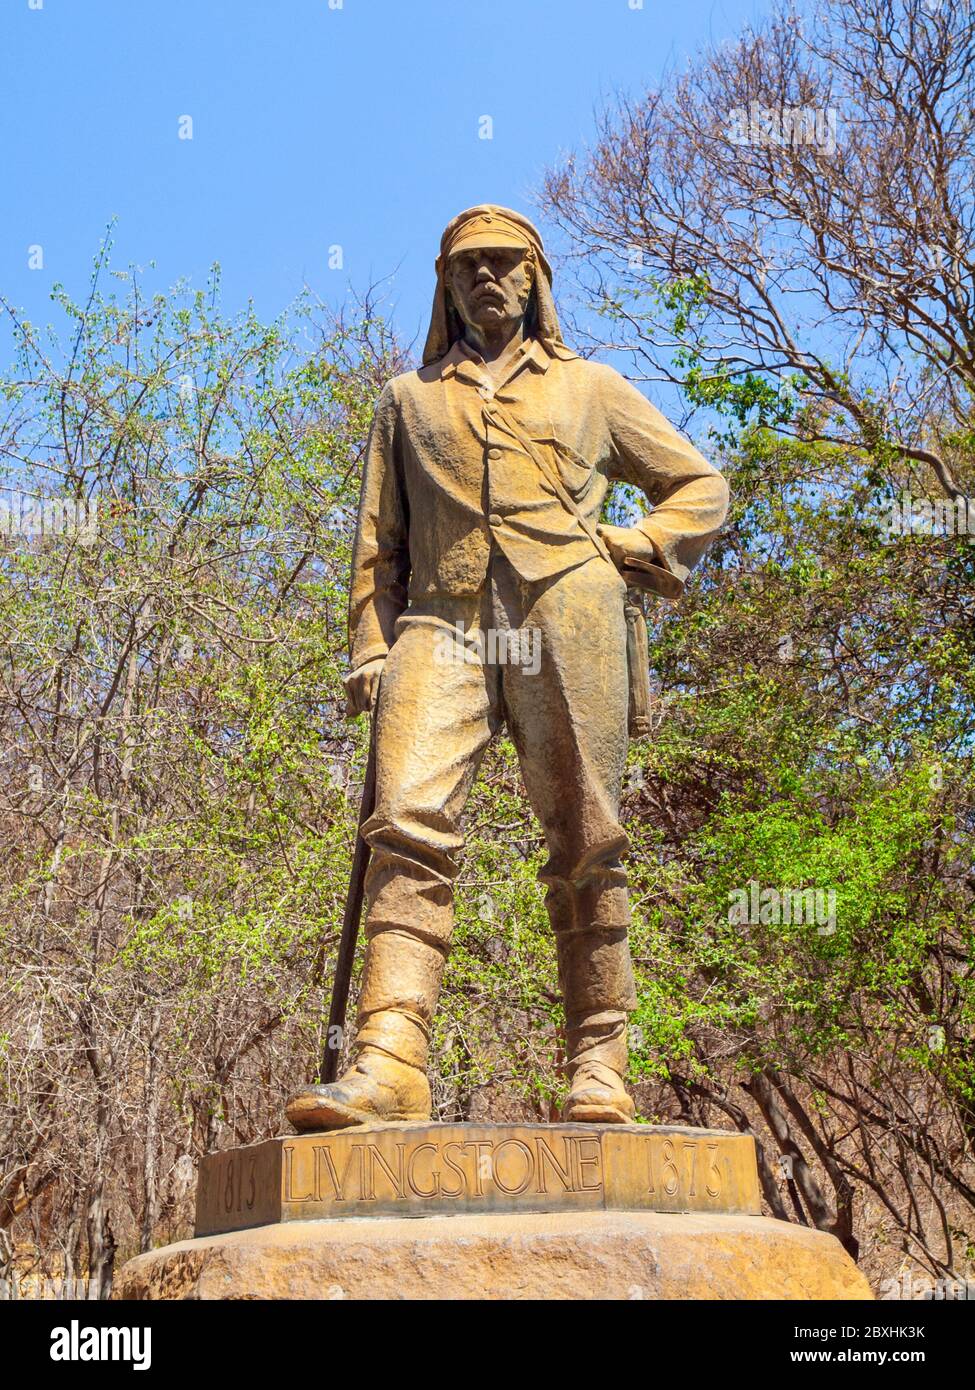 VICTORIA FALLS, ZIMBABWE - 4 OCTOBRE 2013 : statue de David Livingstone dans le parc national de Victoria Falls, Zimbabwe. Banque D'Images